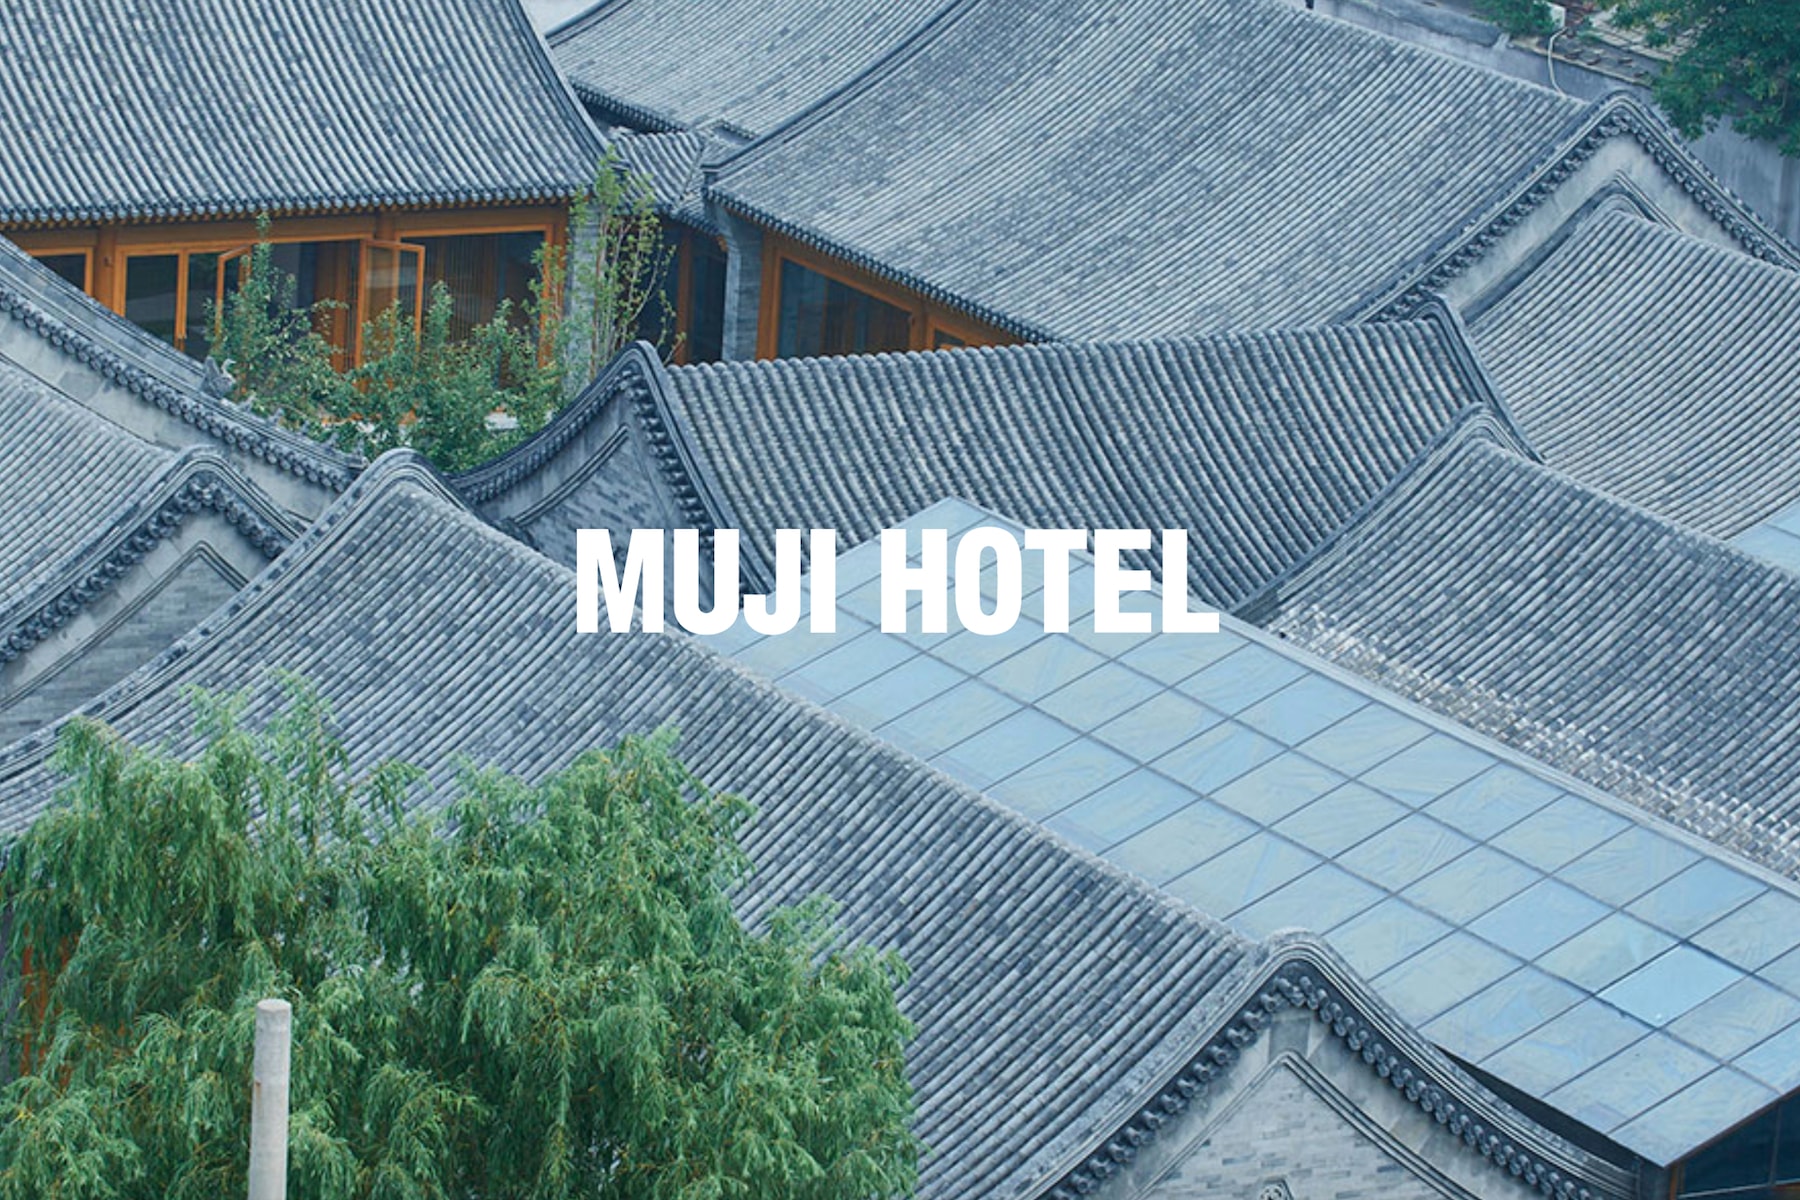 MUJI 正式公佈自家酒店 MUJI HOTEL 開幕日期